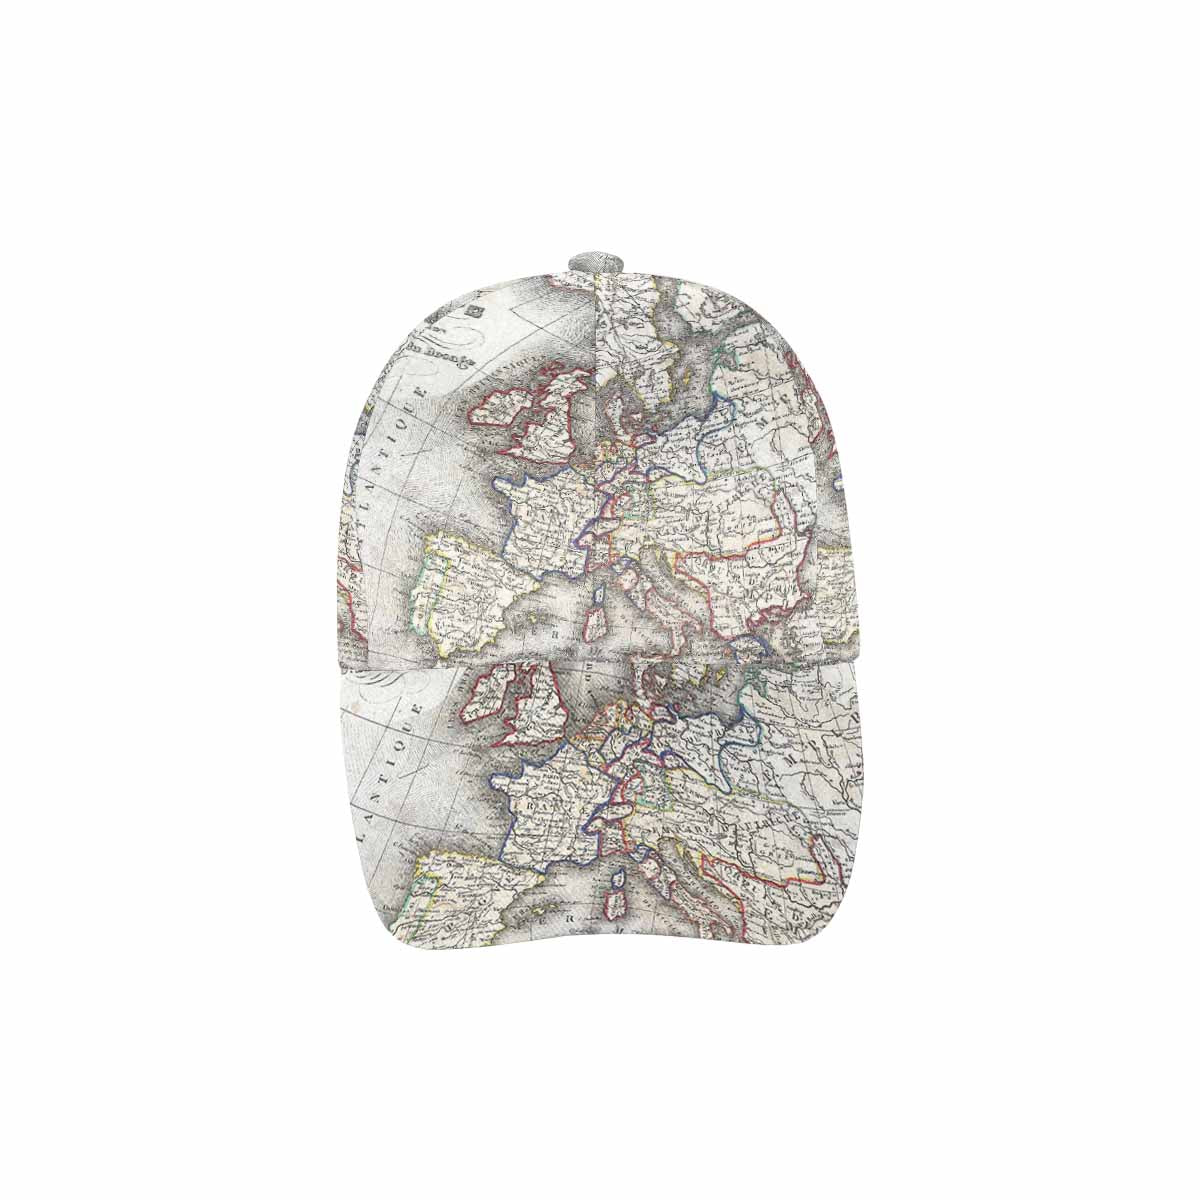 Antique Map design dad cap, trucker hat, Design 36